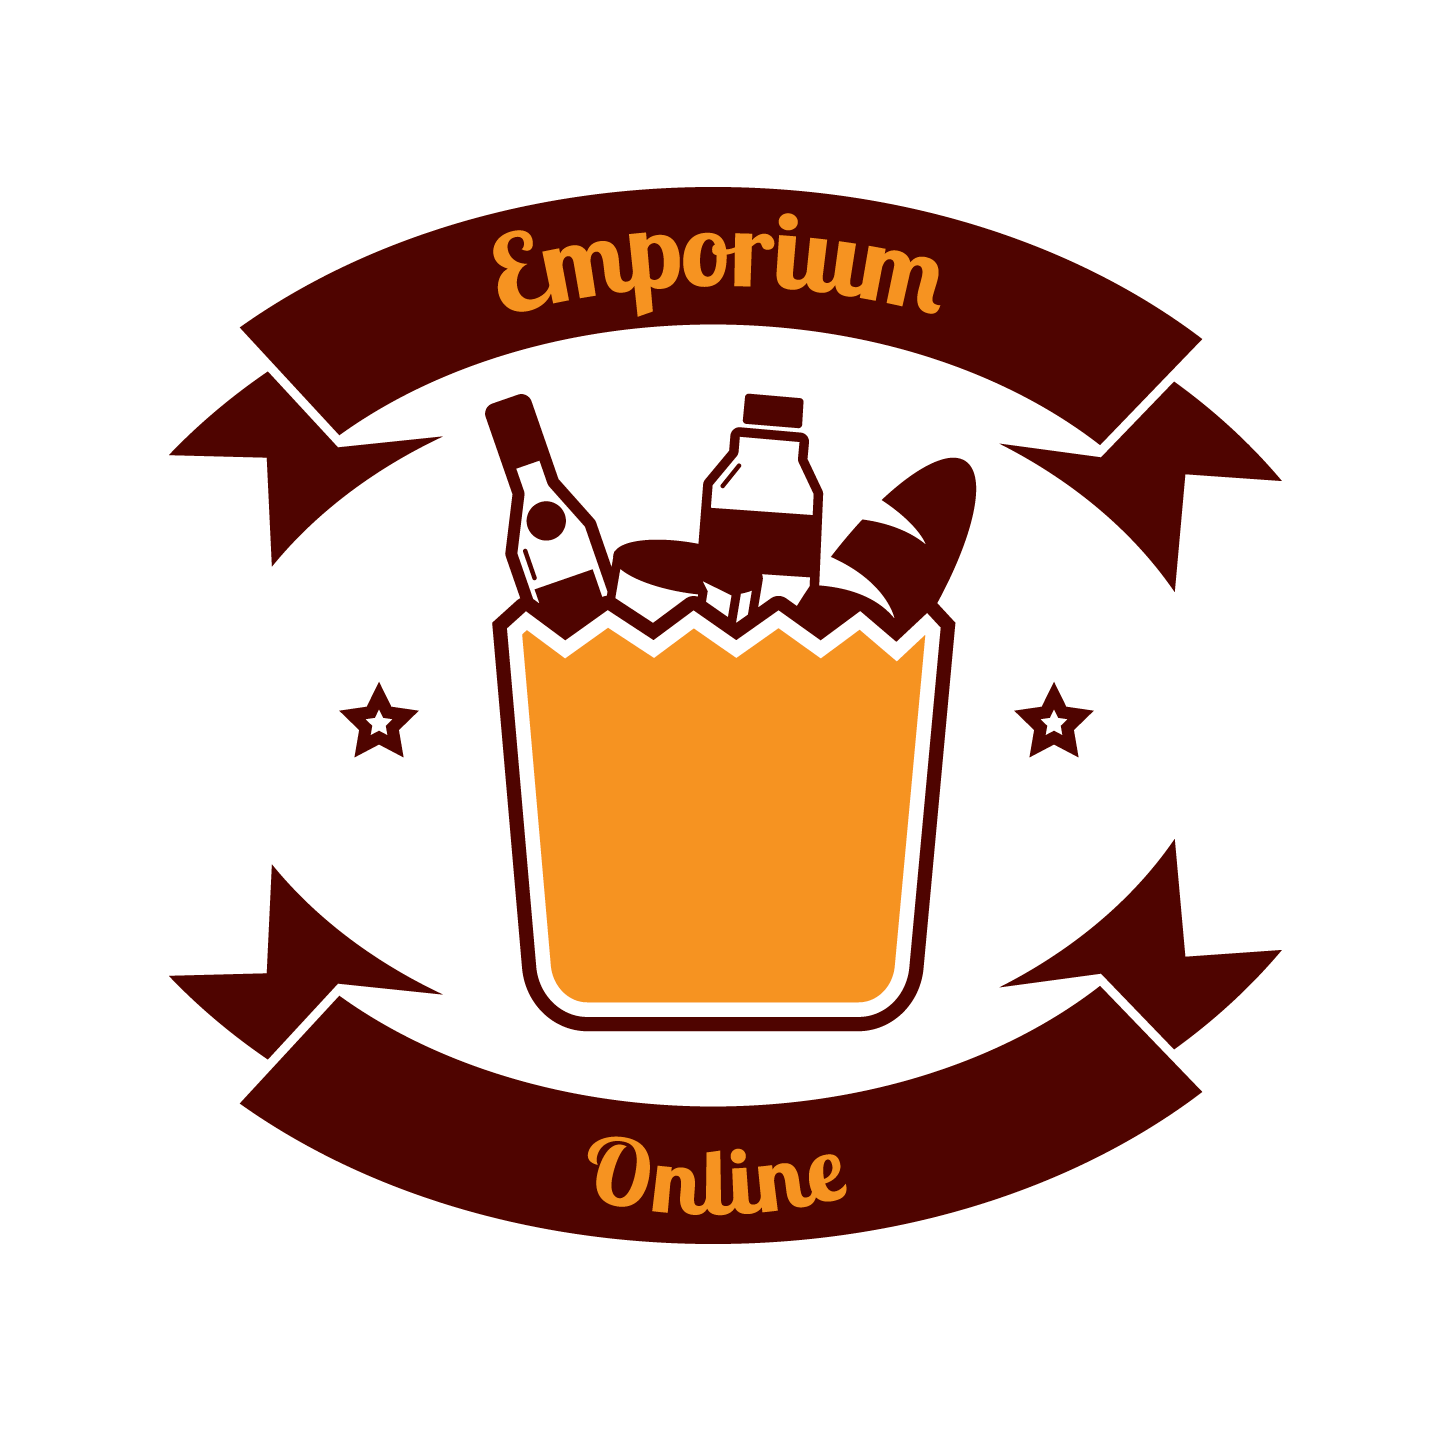 Emporium Online